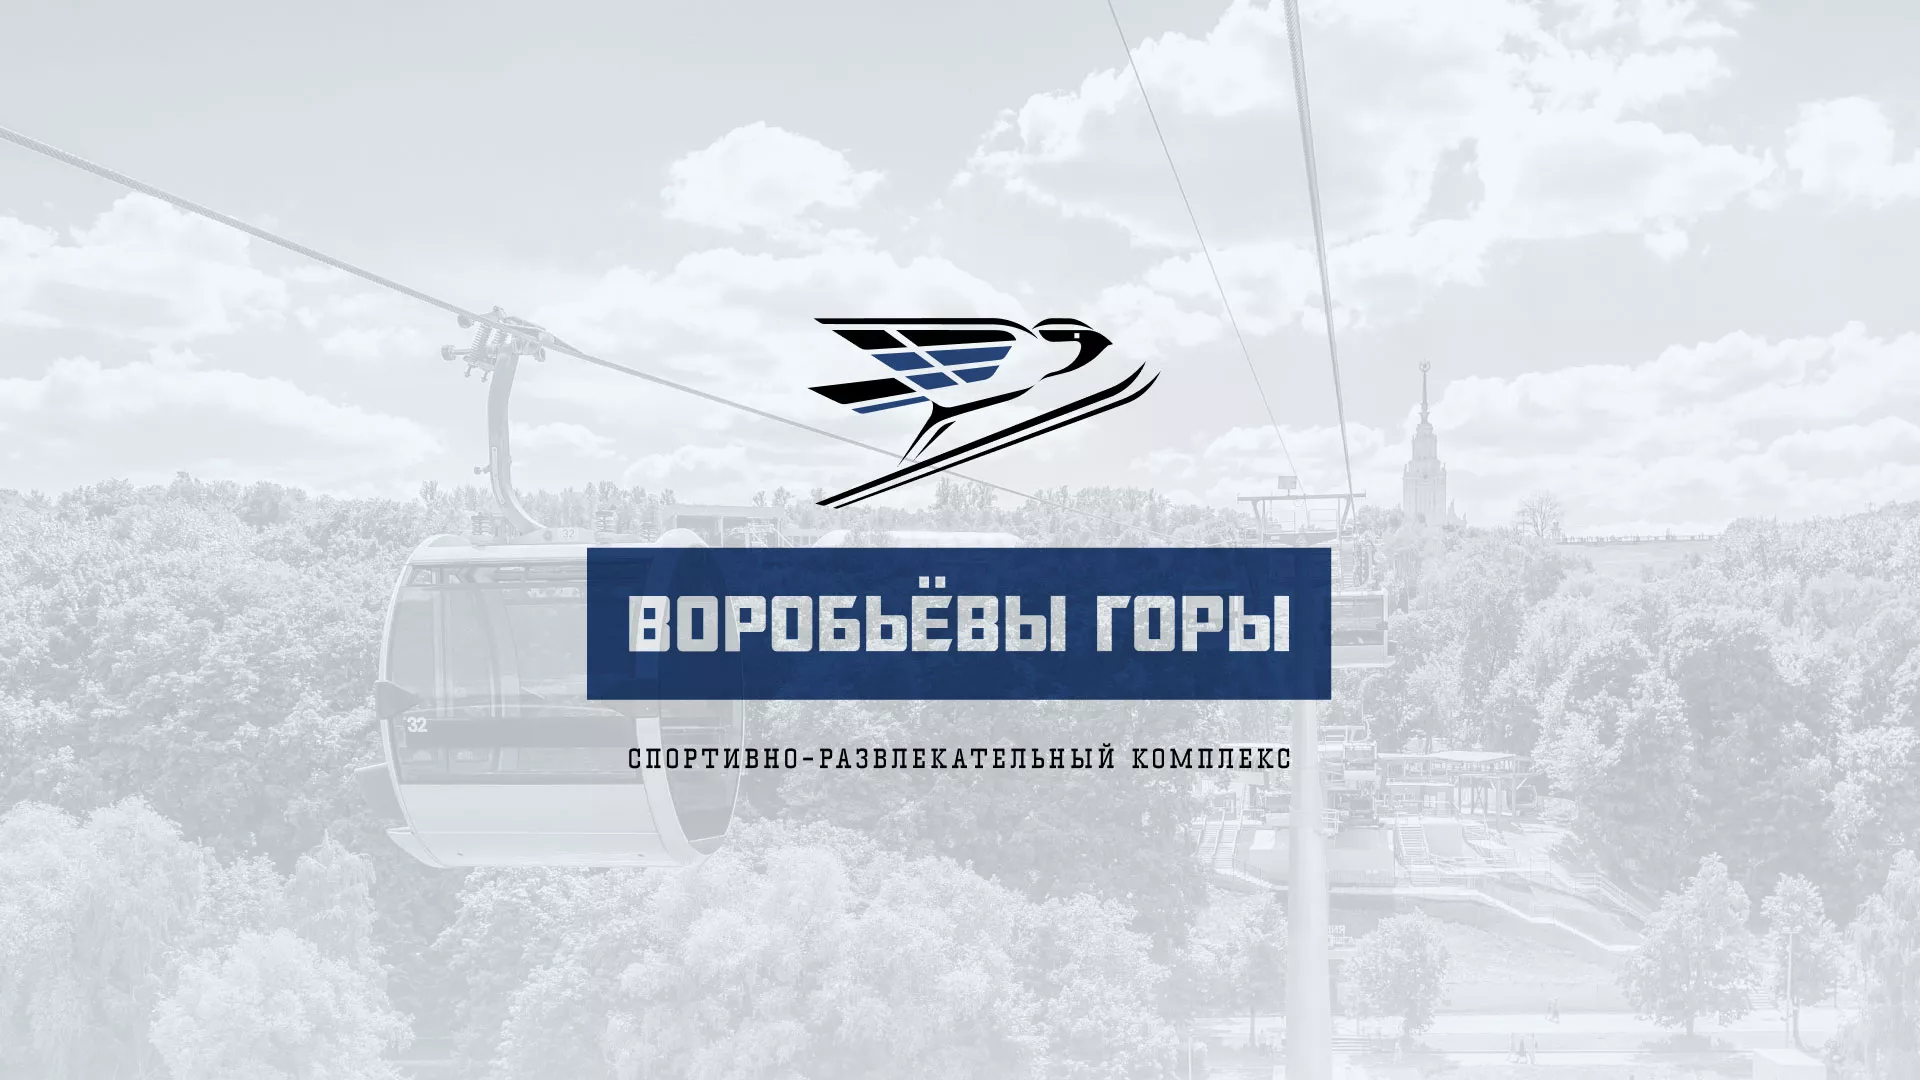 Разработка сайта в Рязани для спортивно-развлекательного комплекса «Воробьёвы горы»